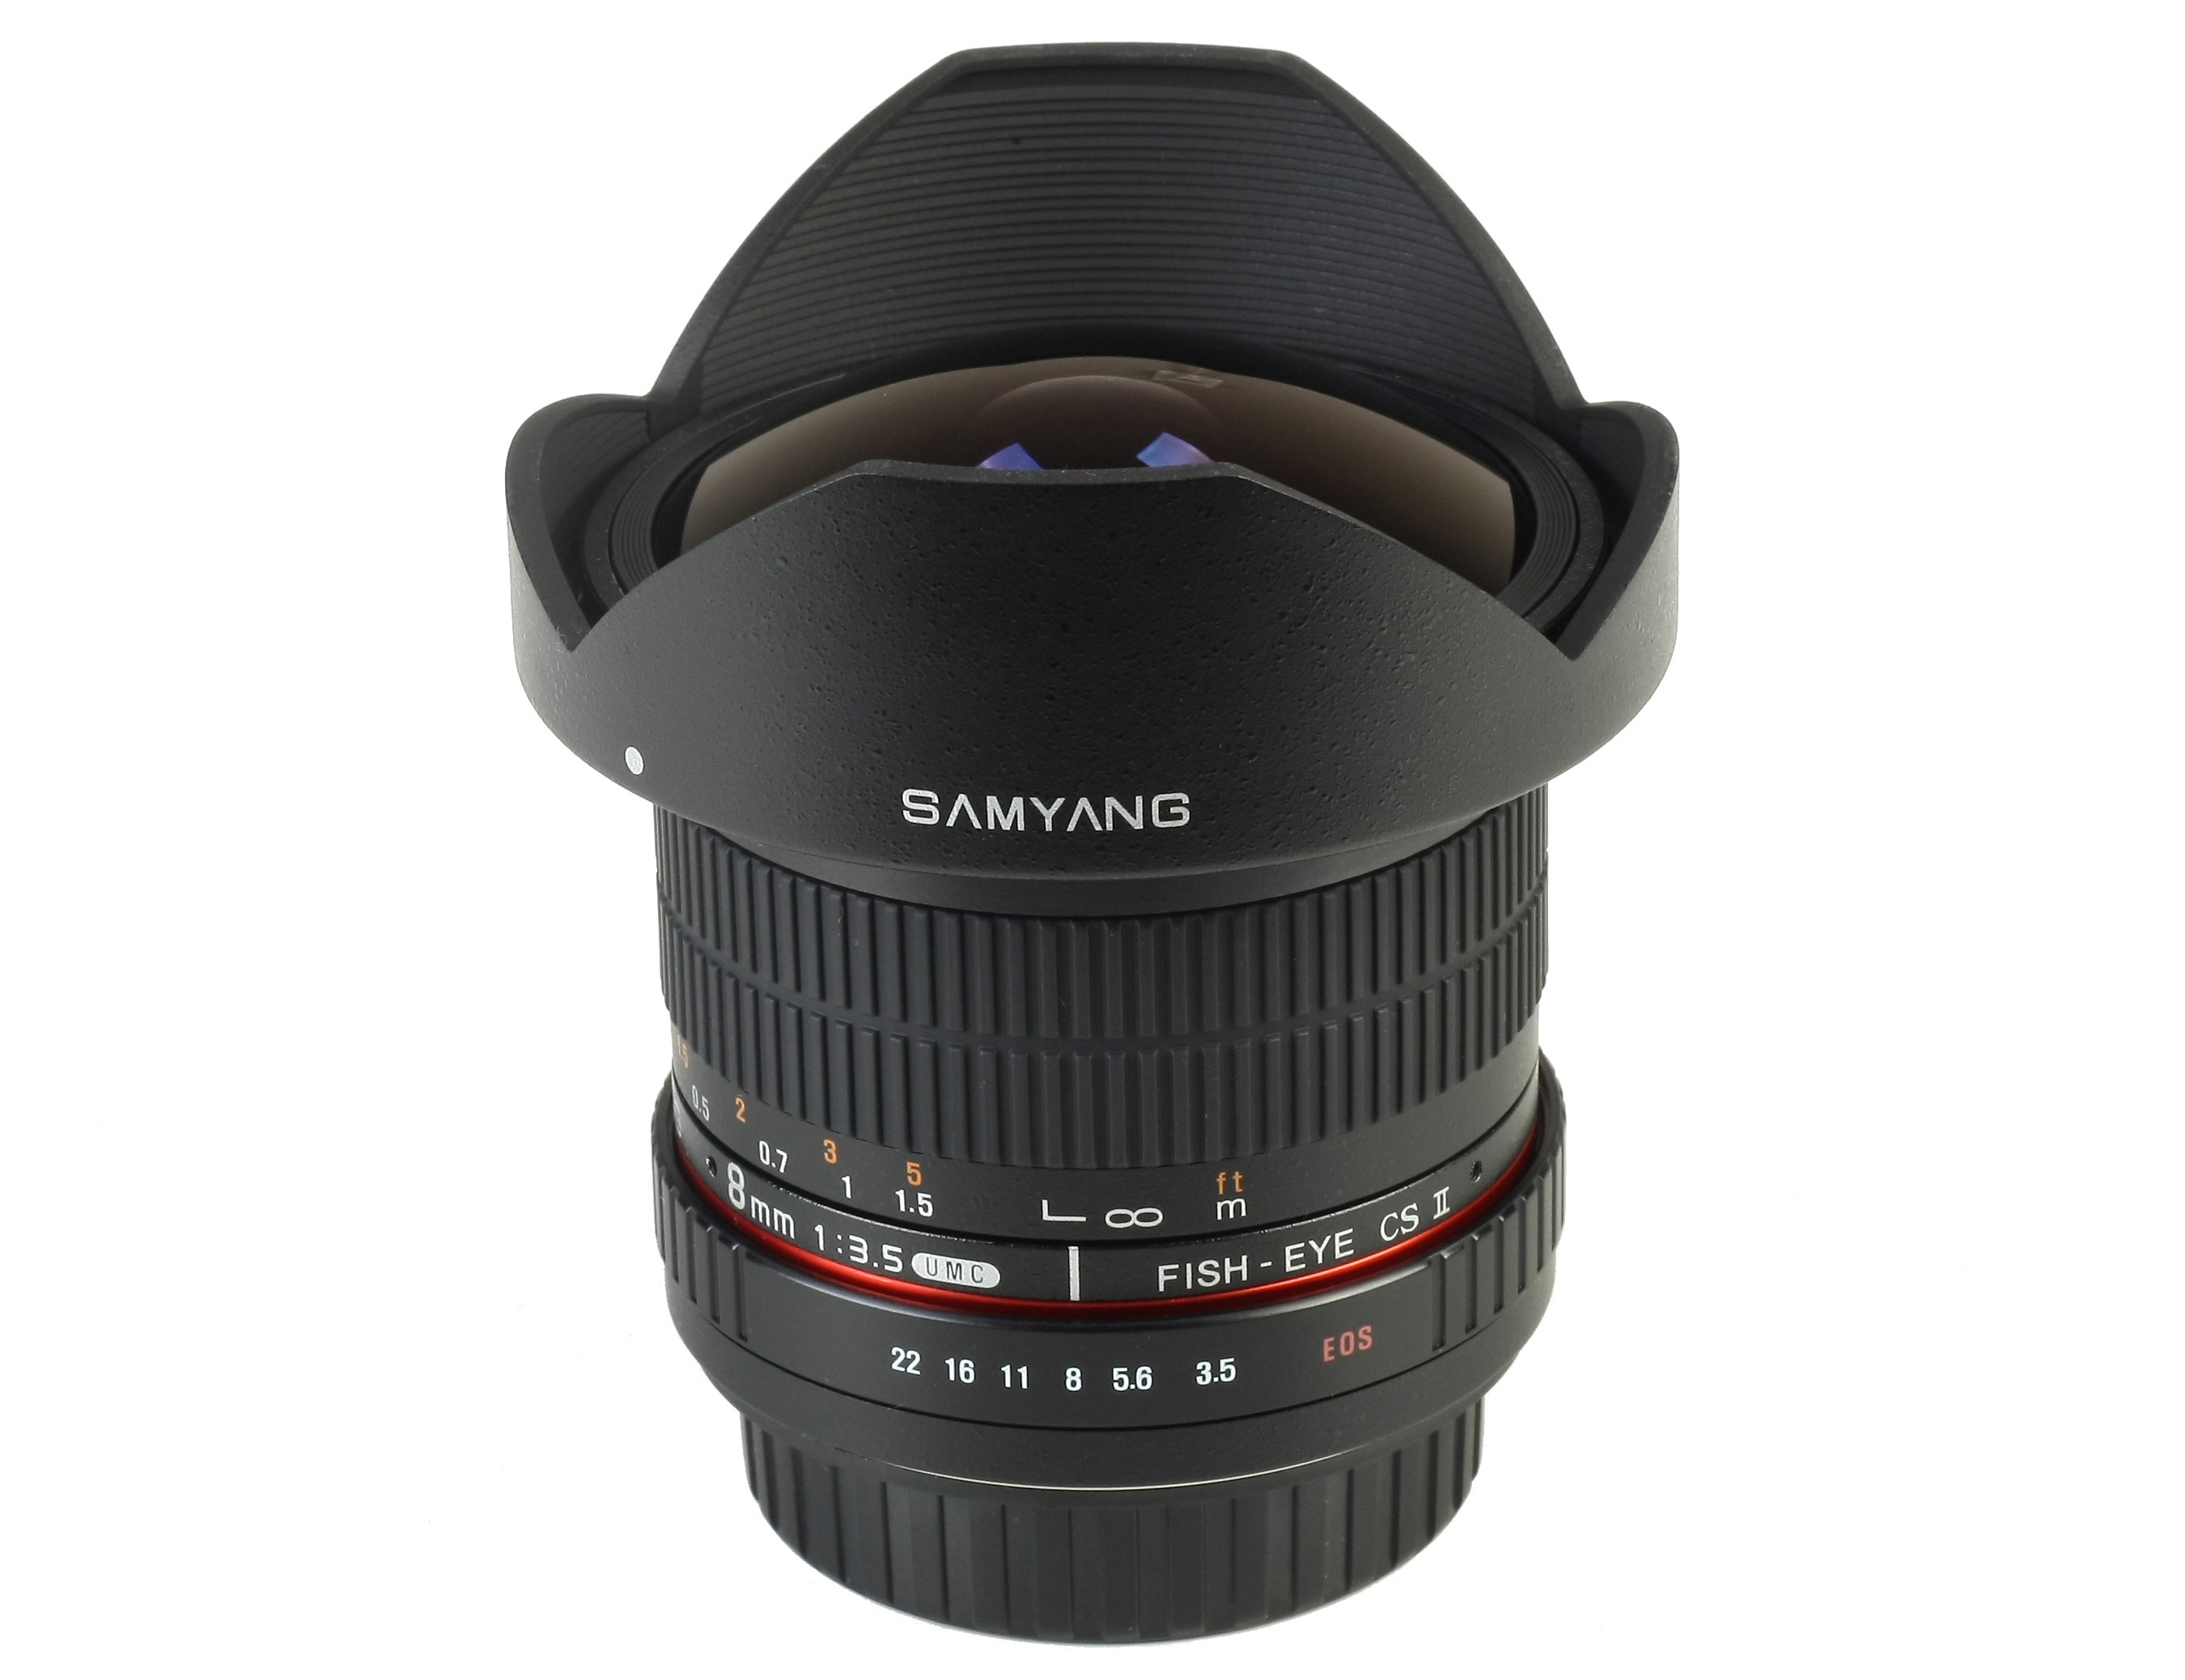 Samyang 8mm f/3.5 UMC CS II gana el “Best Value” de PhotoPlus